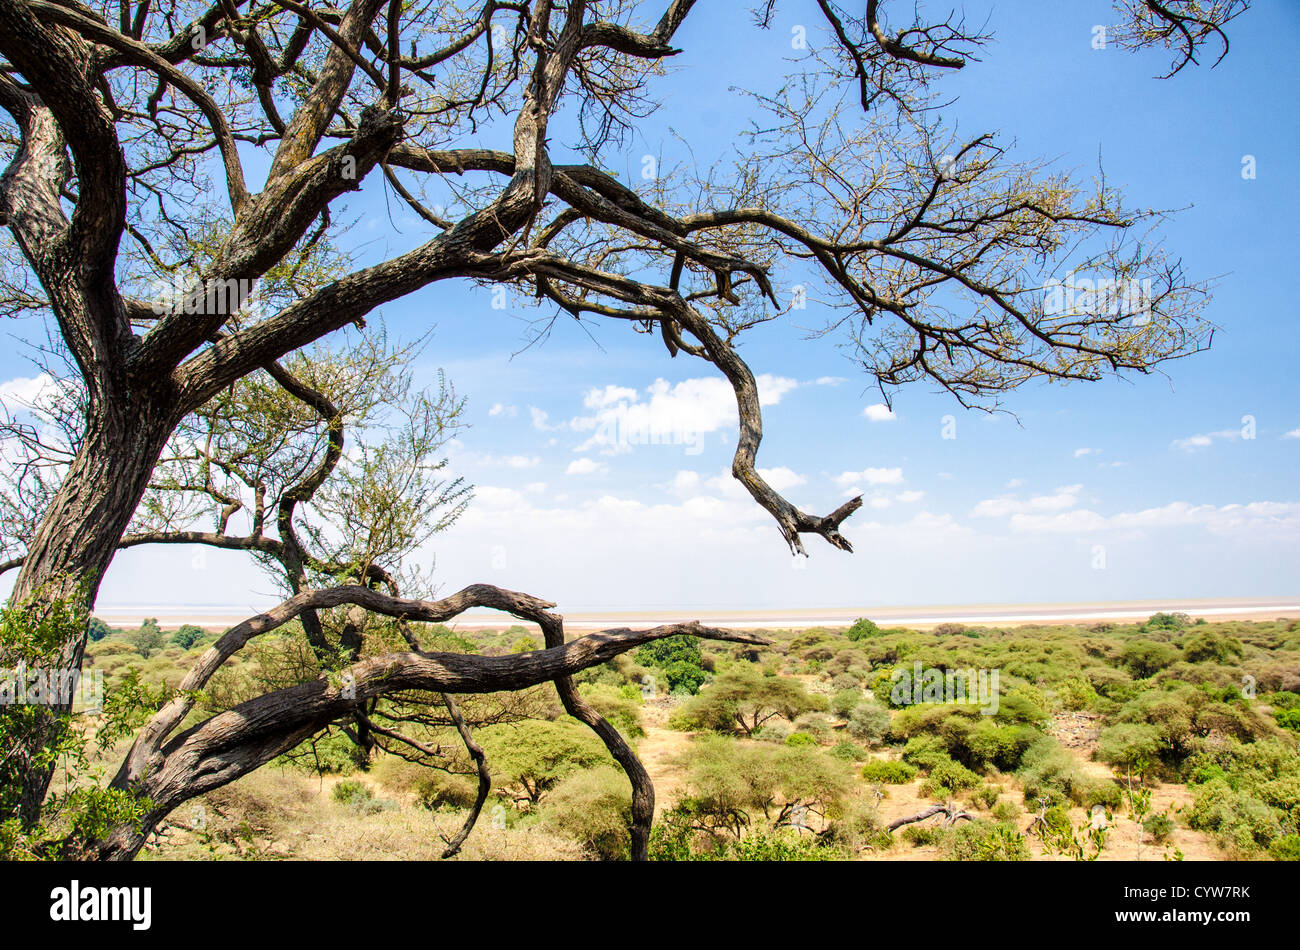 PARCO NAZIONALE DEL LAGO MANYARA, Tanzania - una vista del Parco Nazionale del Lago Manyara da un punto panoramico parzialmente elevato, che si affaccia sulla macchia piatta. Il parco, noto per i leoni e i fenicotteri che si arrampicano sugli alberi, svolge un ruolo cruciale nella conservazione delle diverse specie ed ecosistemi della Tanzania. Foto Stock